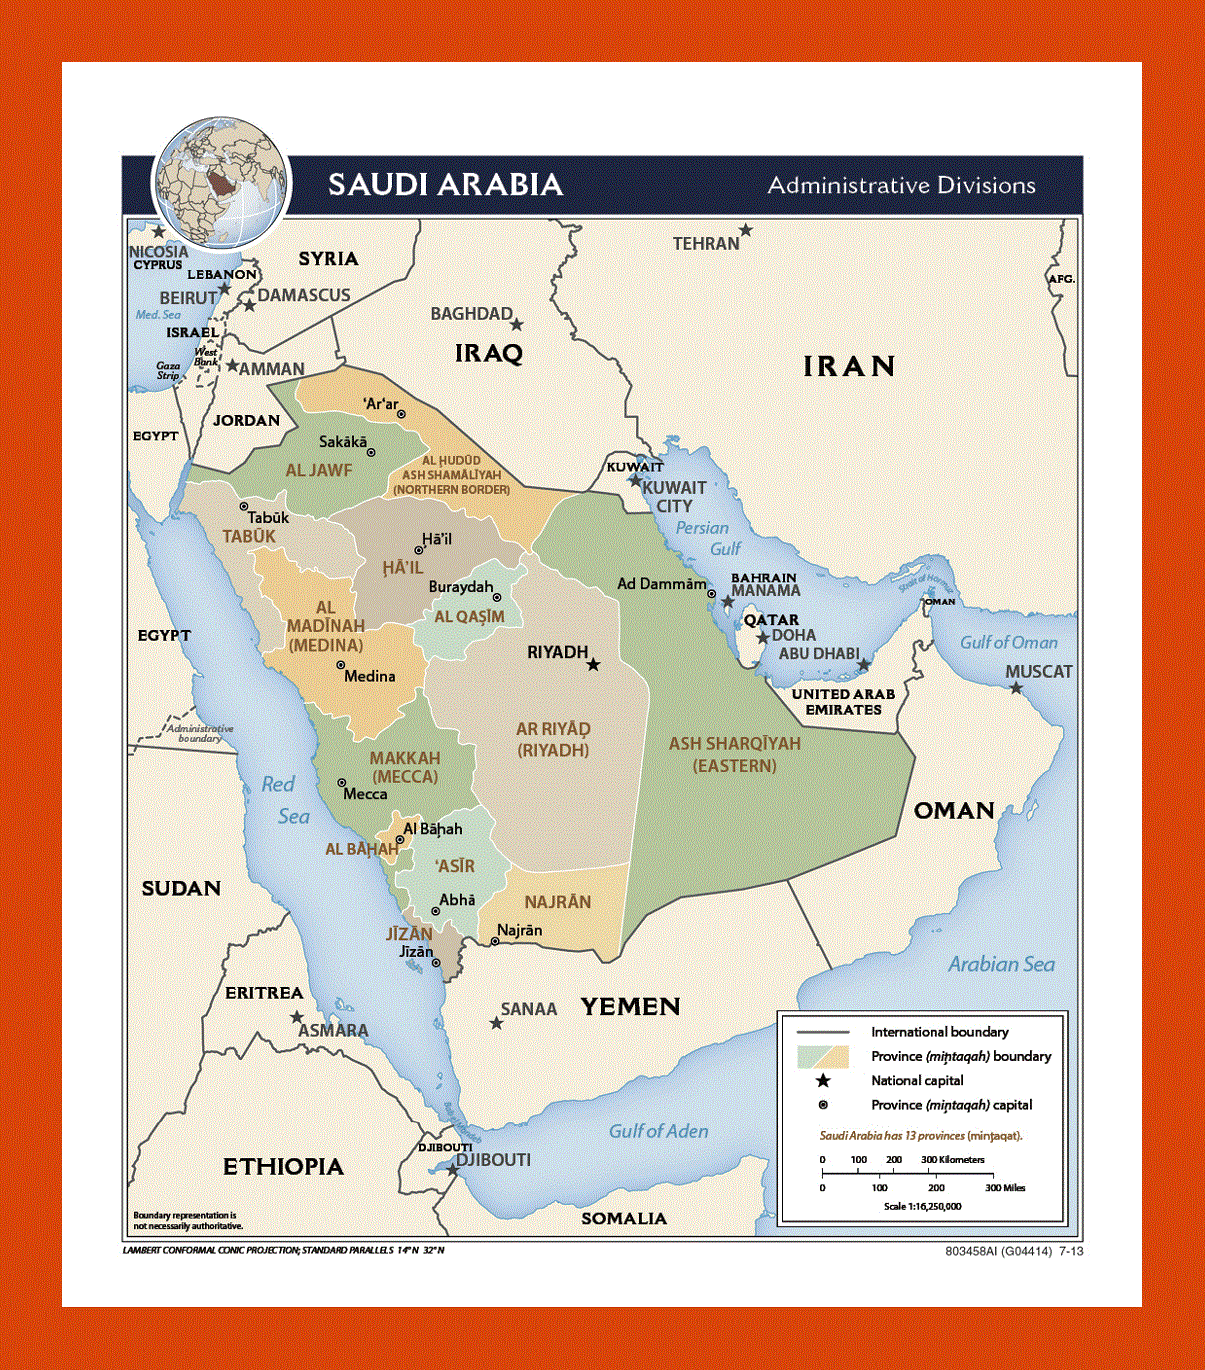 Administrative divisions map of Saudi Arabia - 2013